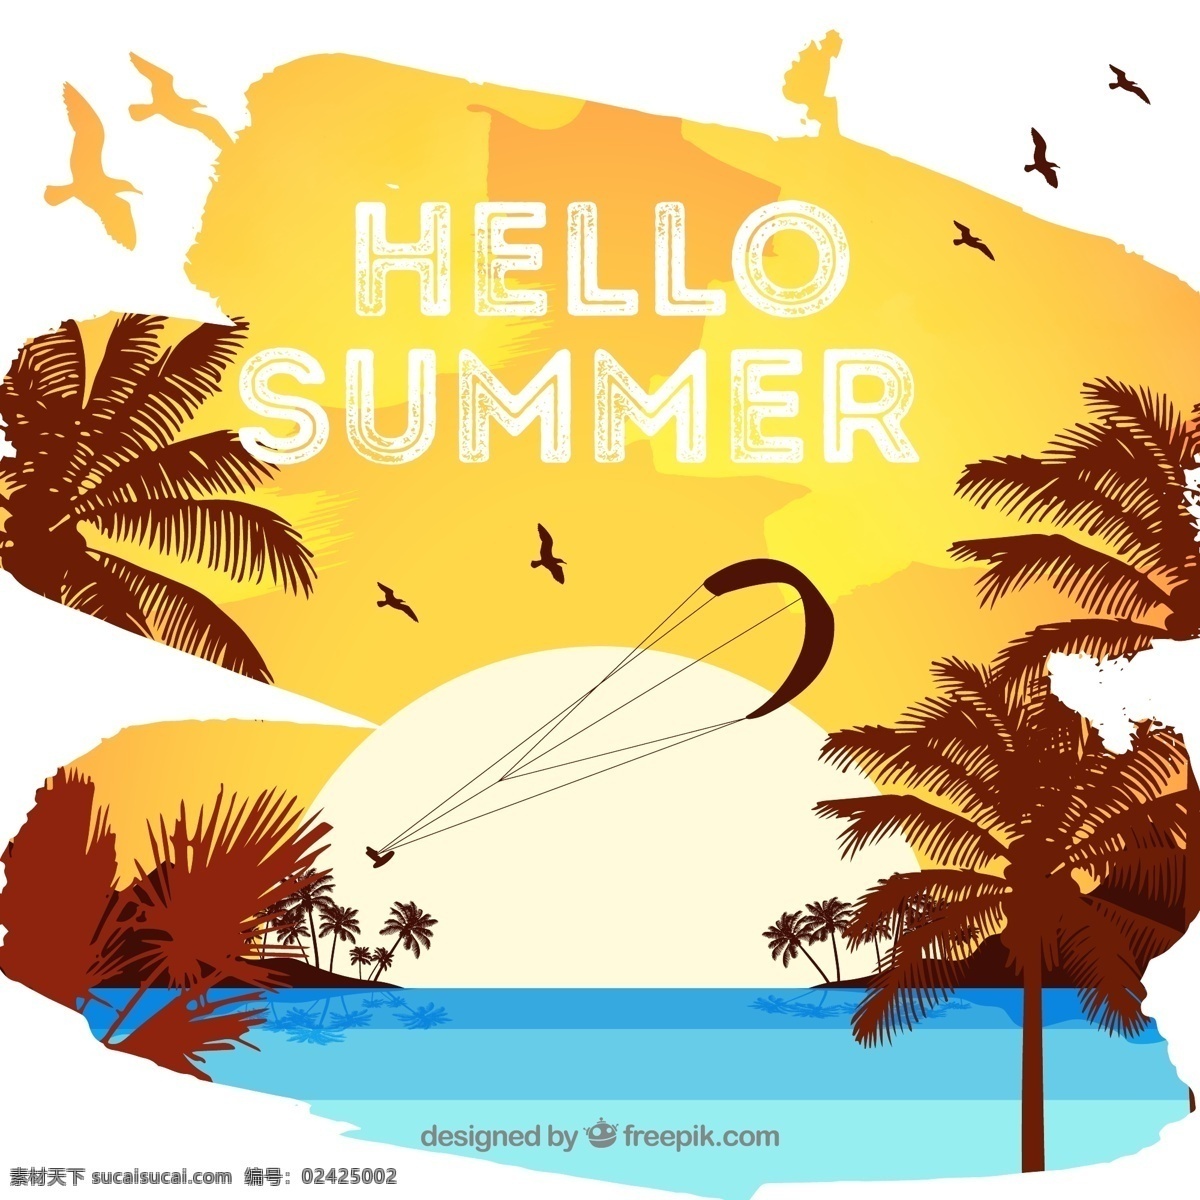 复古 你好 夏季 海边 风景 矢量 大海 沙滩 滑翔伞 海鸥 椰子树 太阳 度假 旅游 跳伞 矢量图 文化艺术